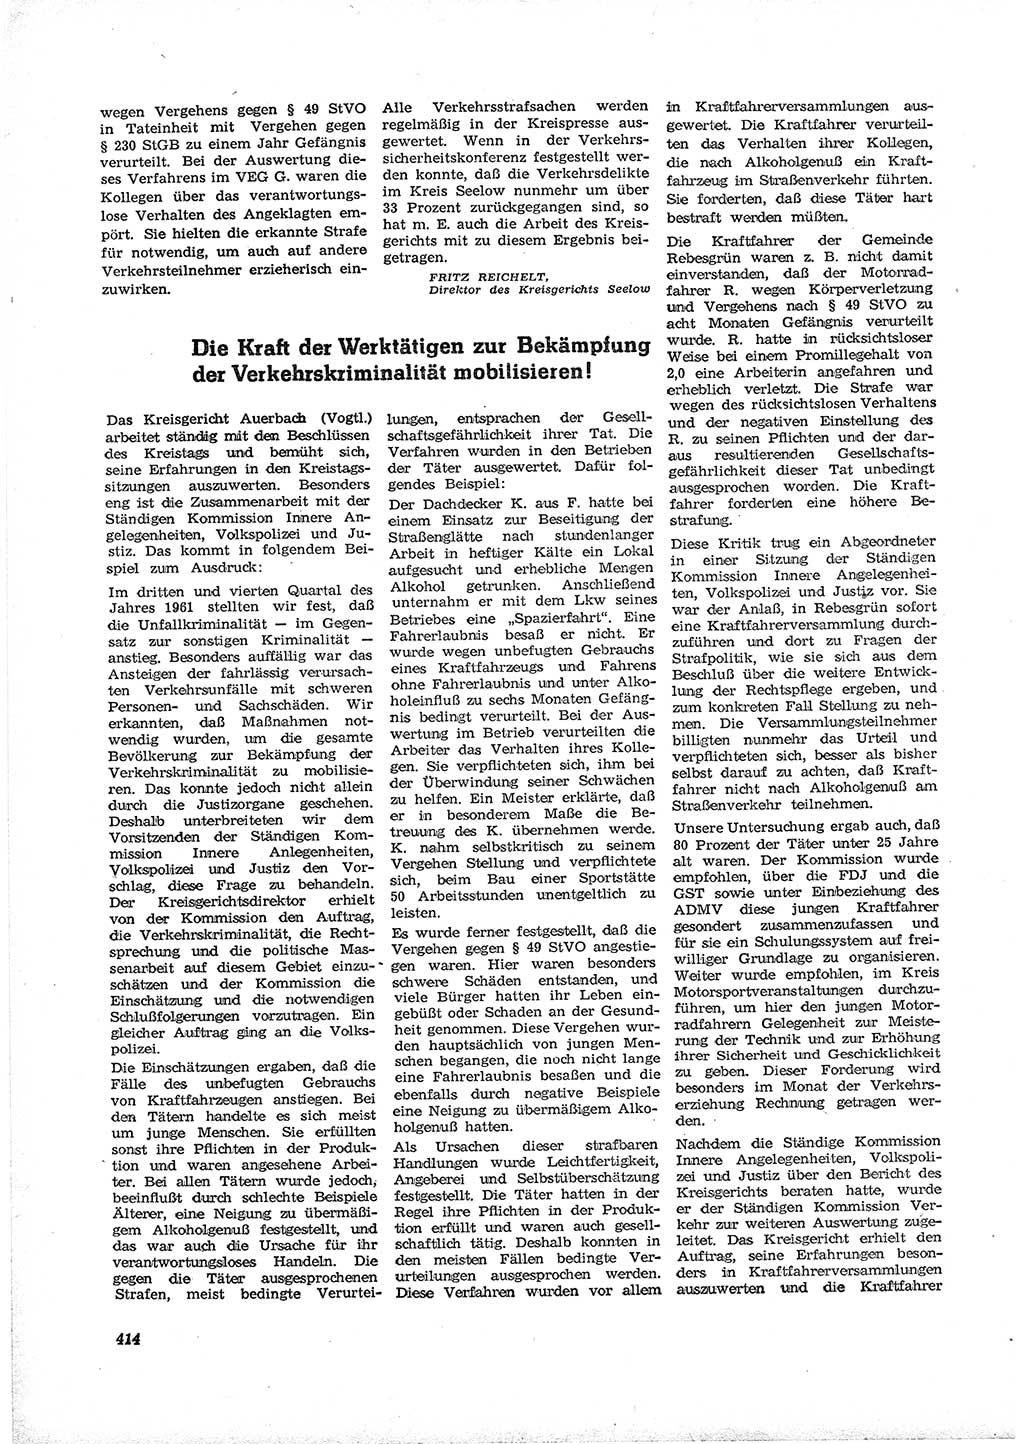 Neue Justiz (NJ), Zeitschrift für Recht und Rechtswissenschaft [Deutsche Demokratische Republik (DDR)], 16. Jahrgang 1962, Seite 414 (NJ DDR 1962, S. 414)